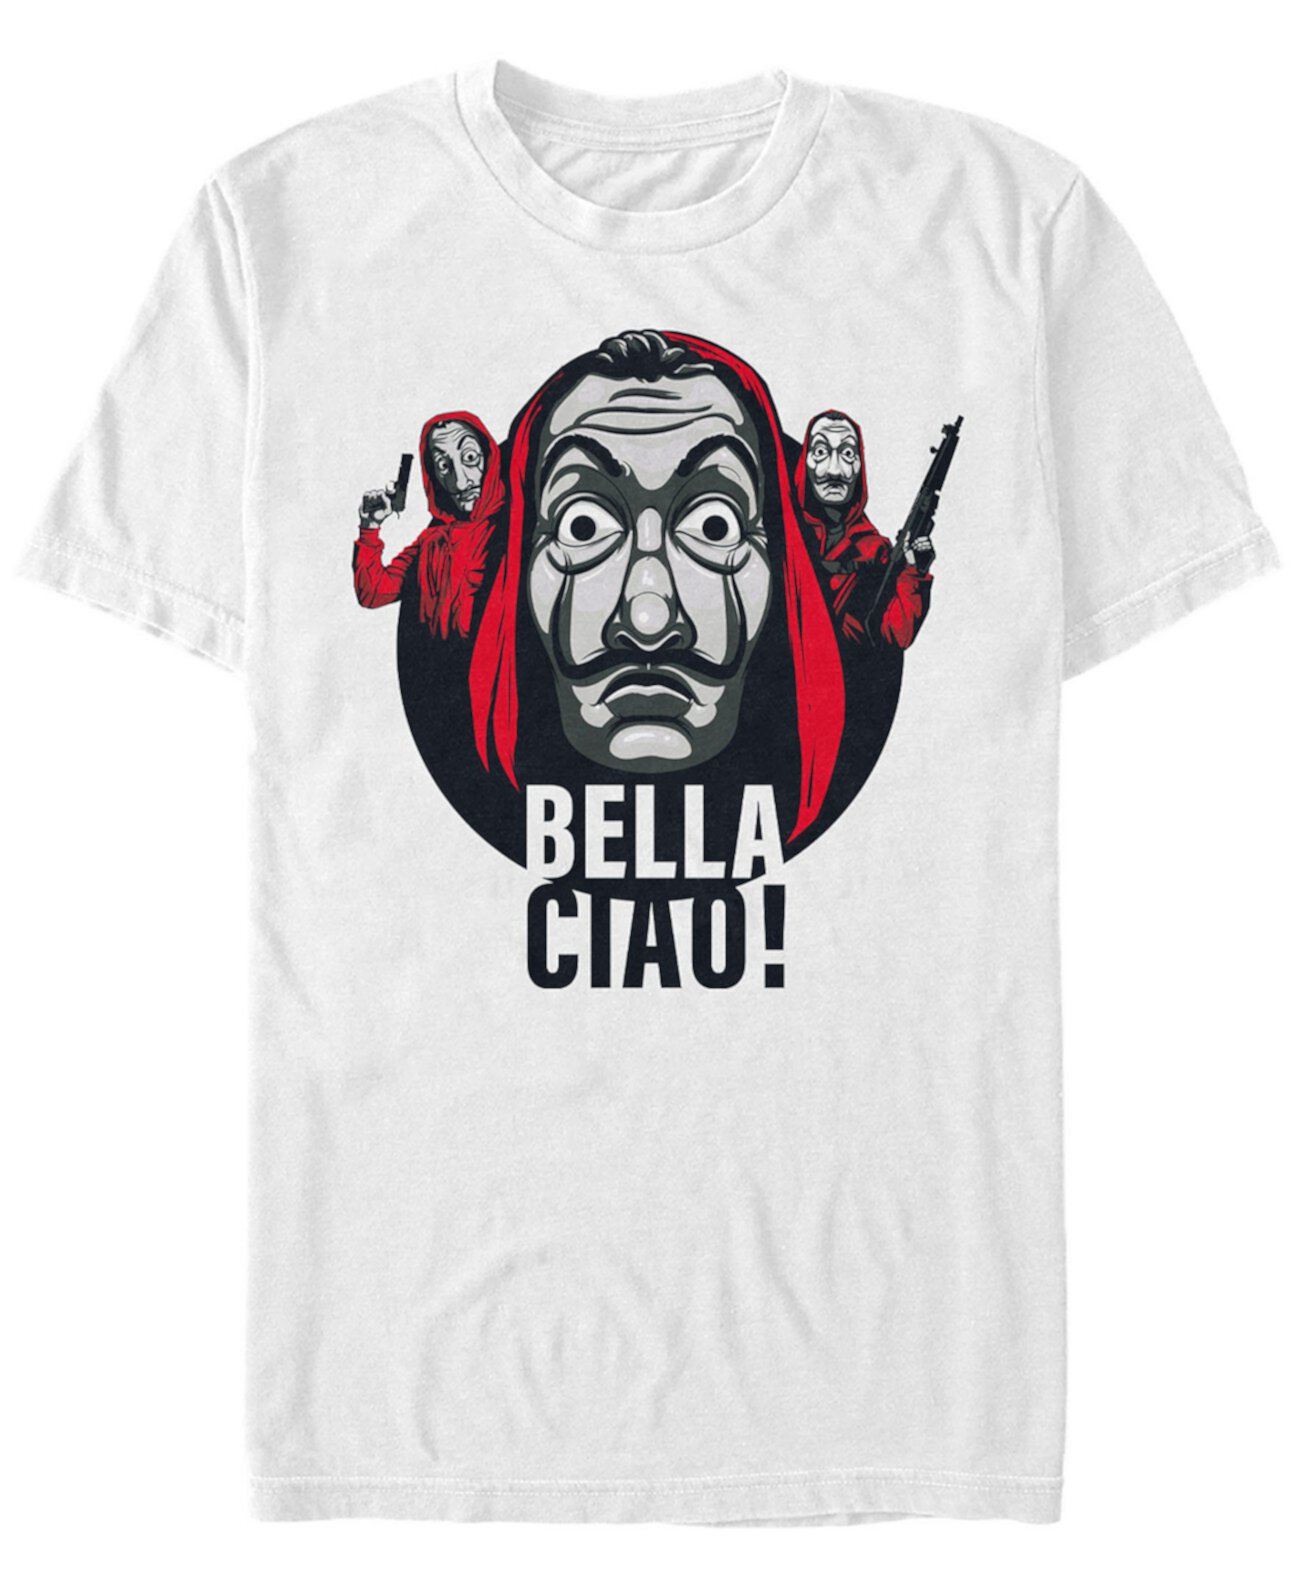 Мужская футболка с коротким рукавом в маске La Casa De Papel Bella Ciao FIFTH SUN